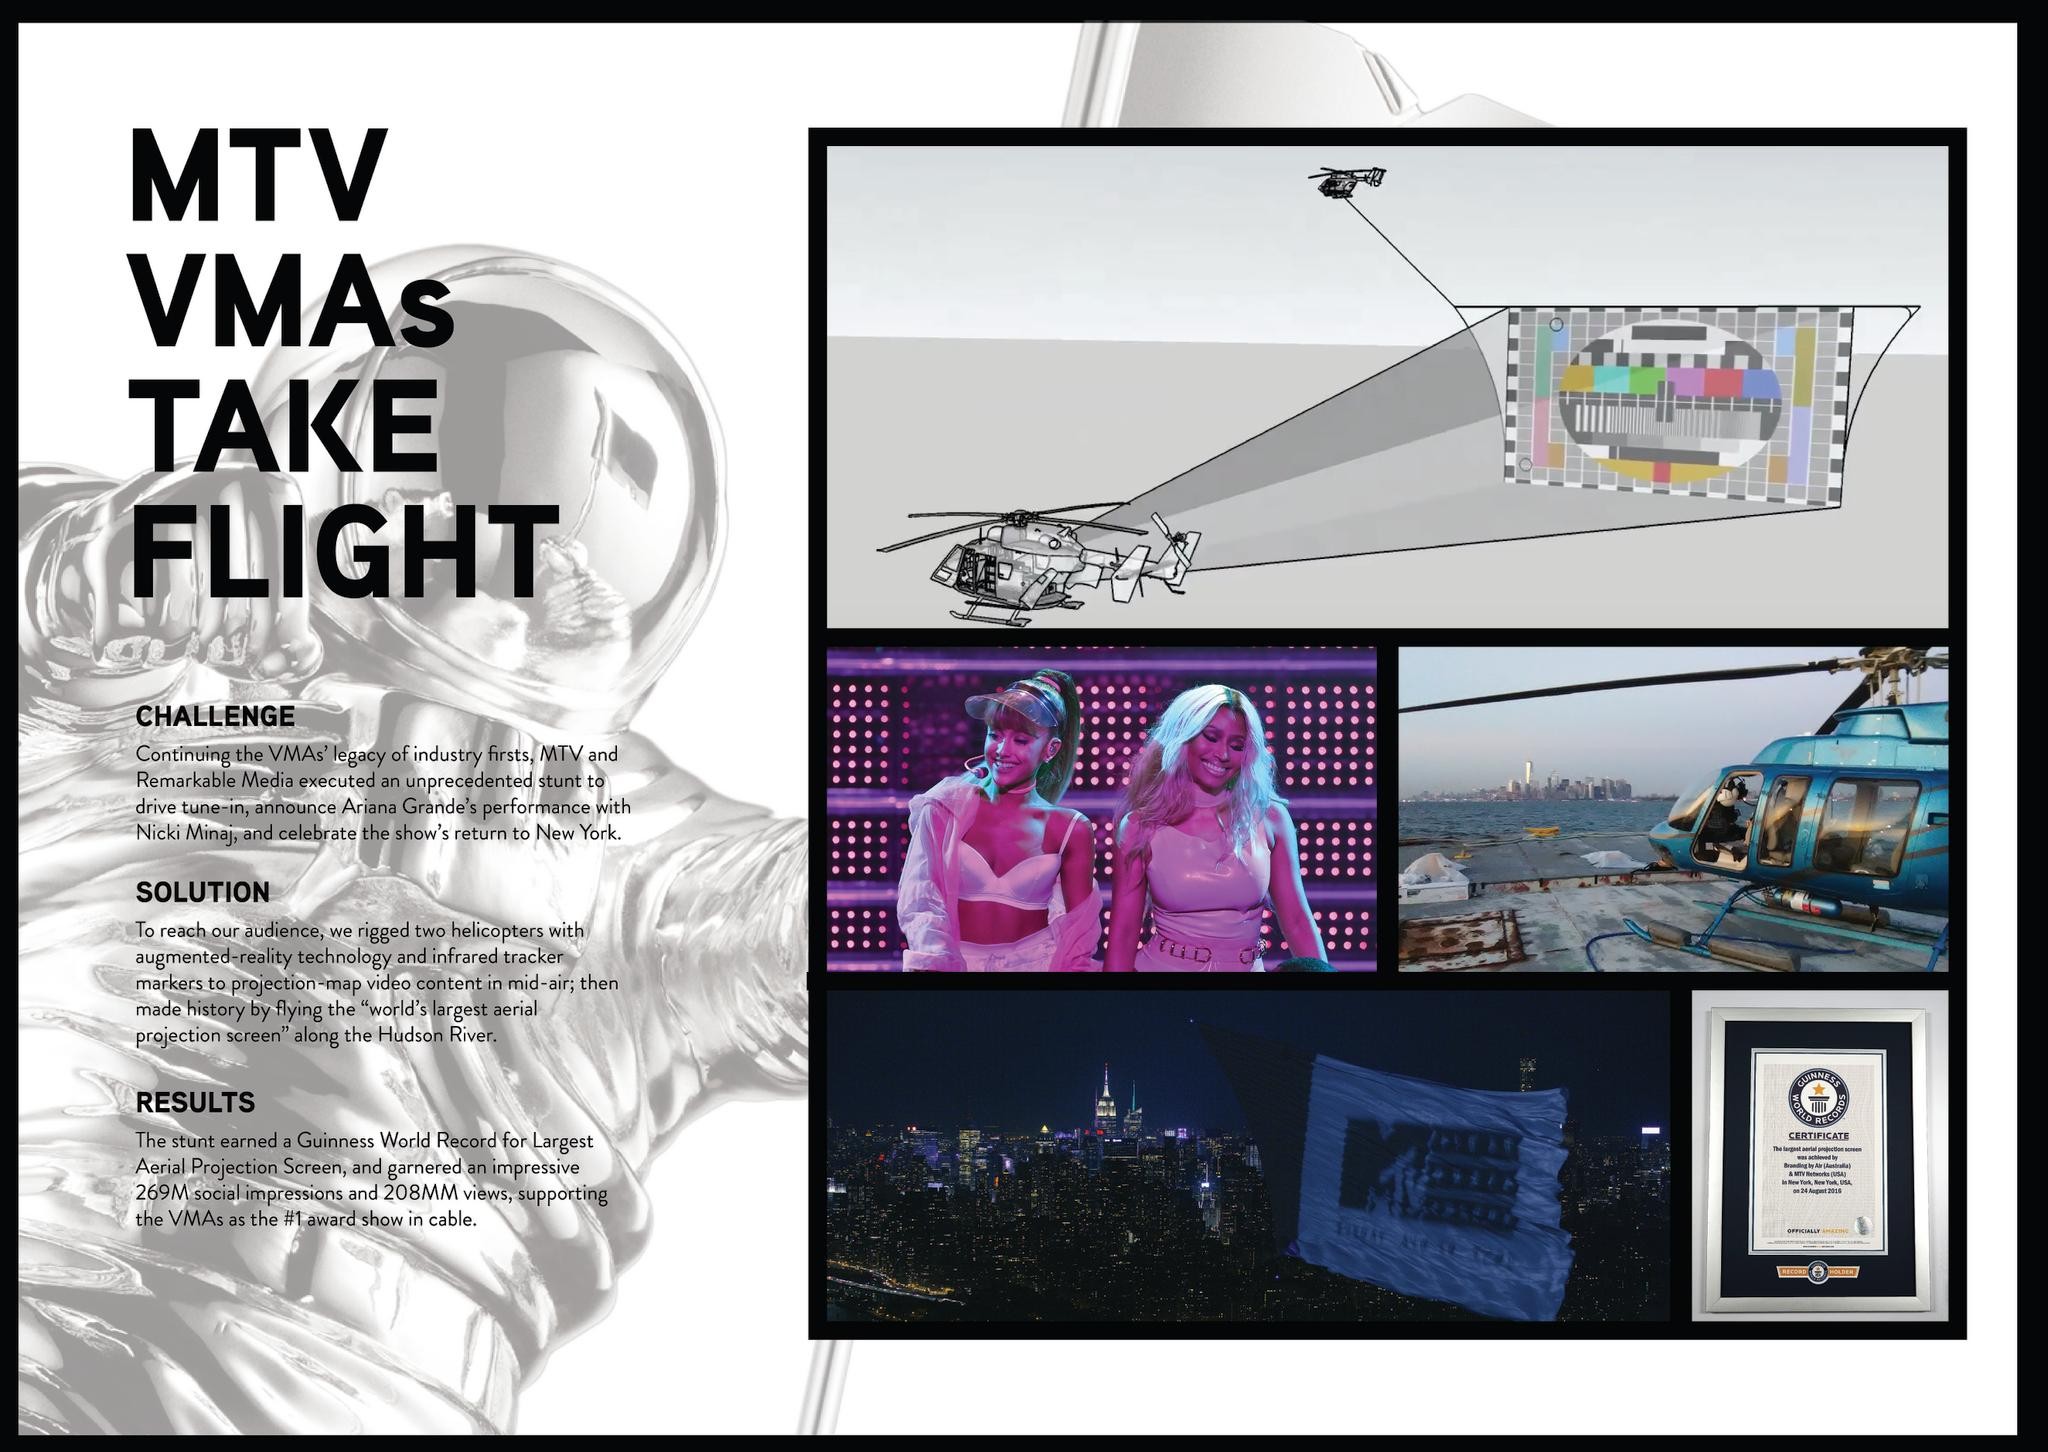 MTV VMAs Take Flight